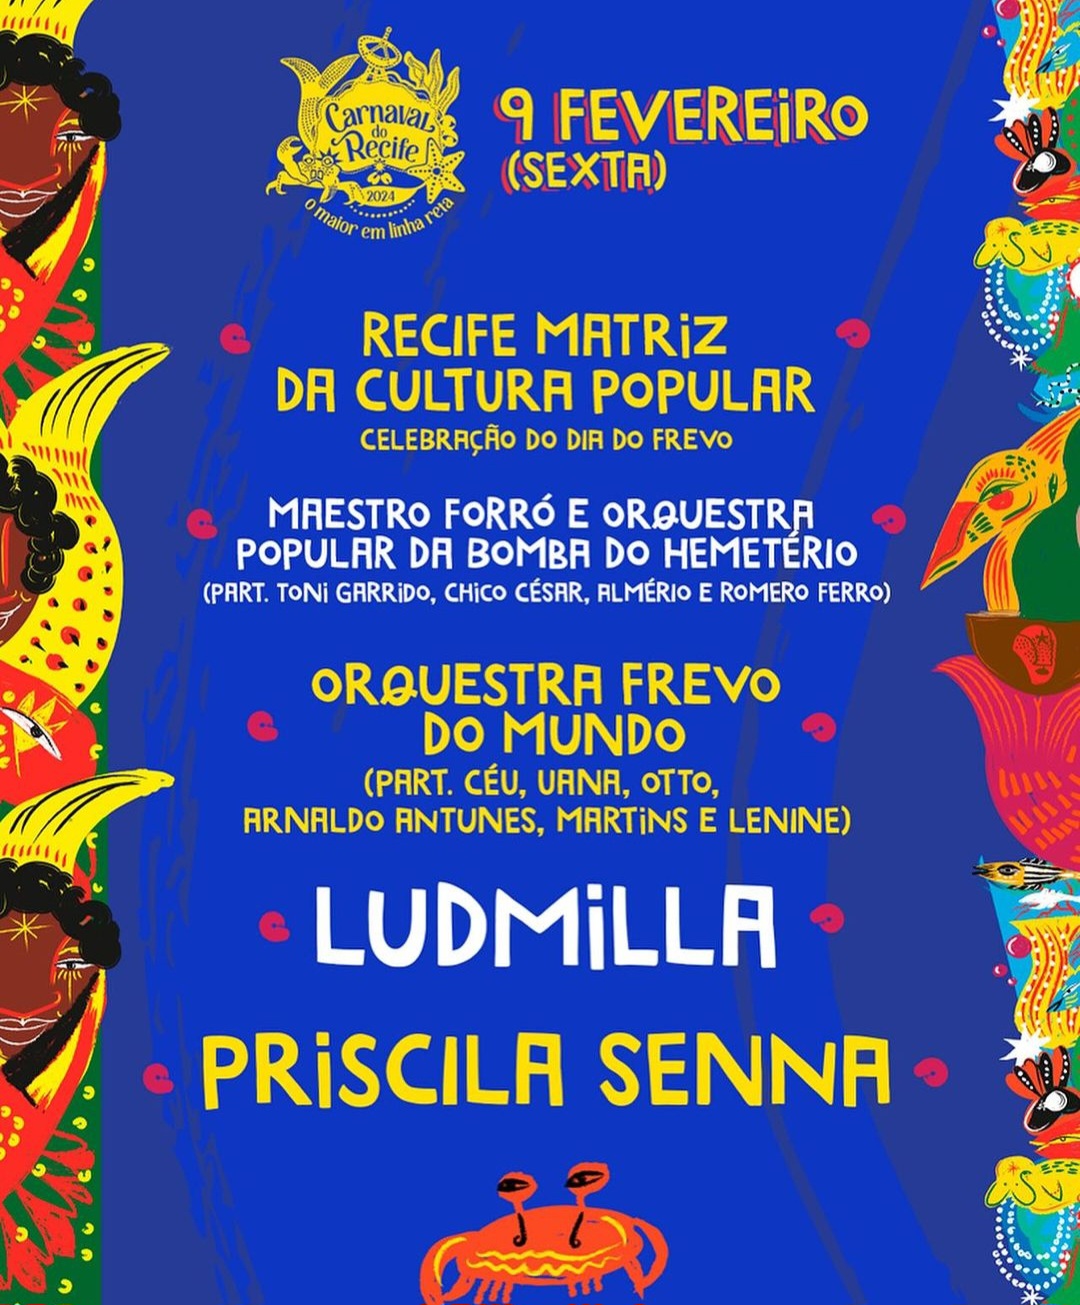 Celebração do Dia do Frevo, Meestro Forró & Orquestra Popular da Bomba do Hemetério, Orquestra Frevo do Mundo, Ludmilla e Priscila Senna